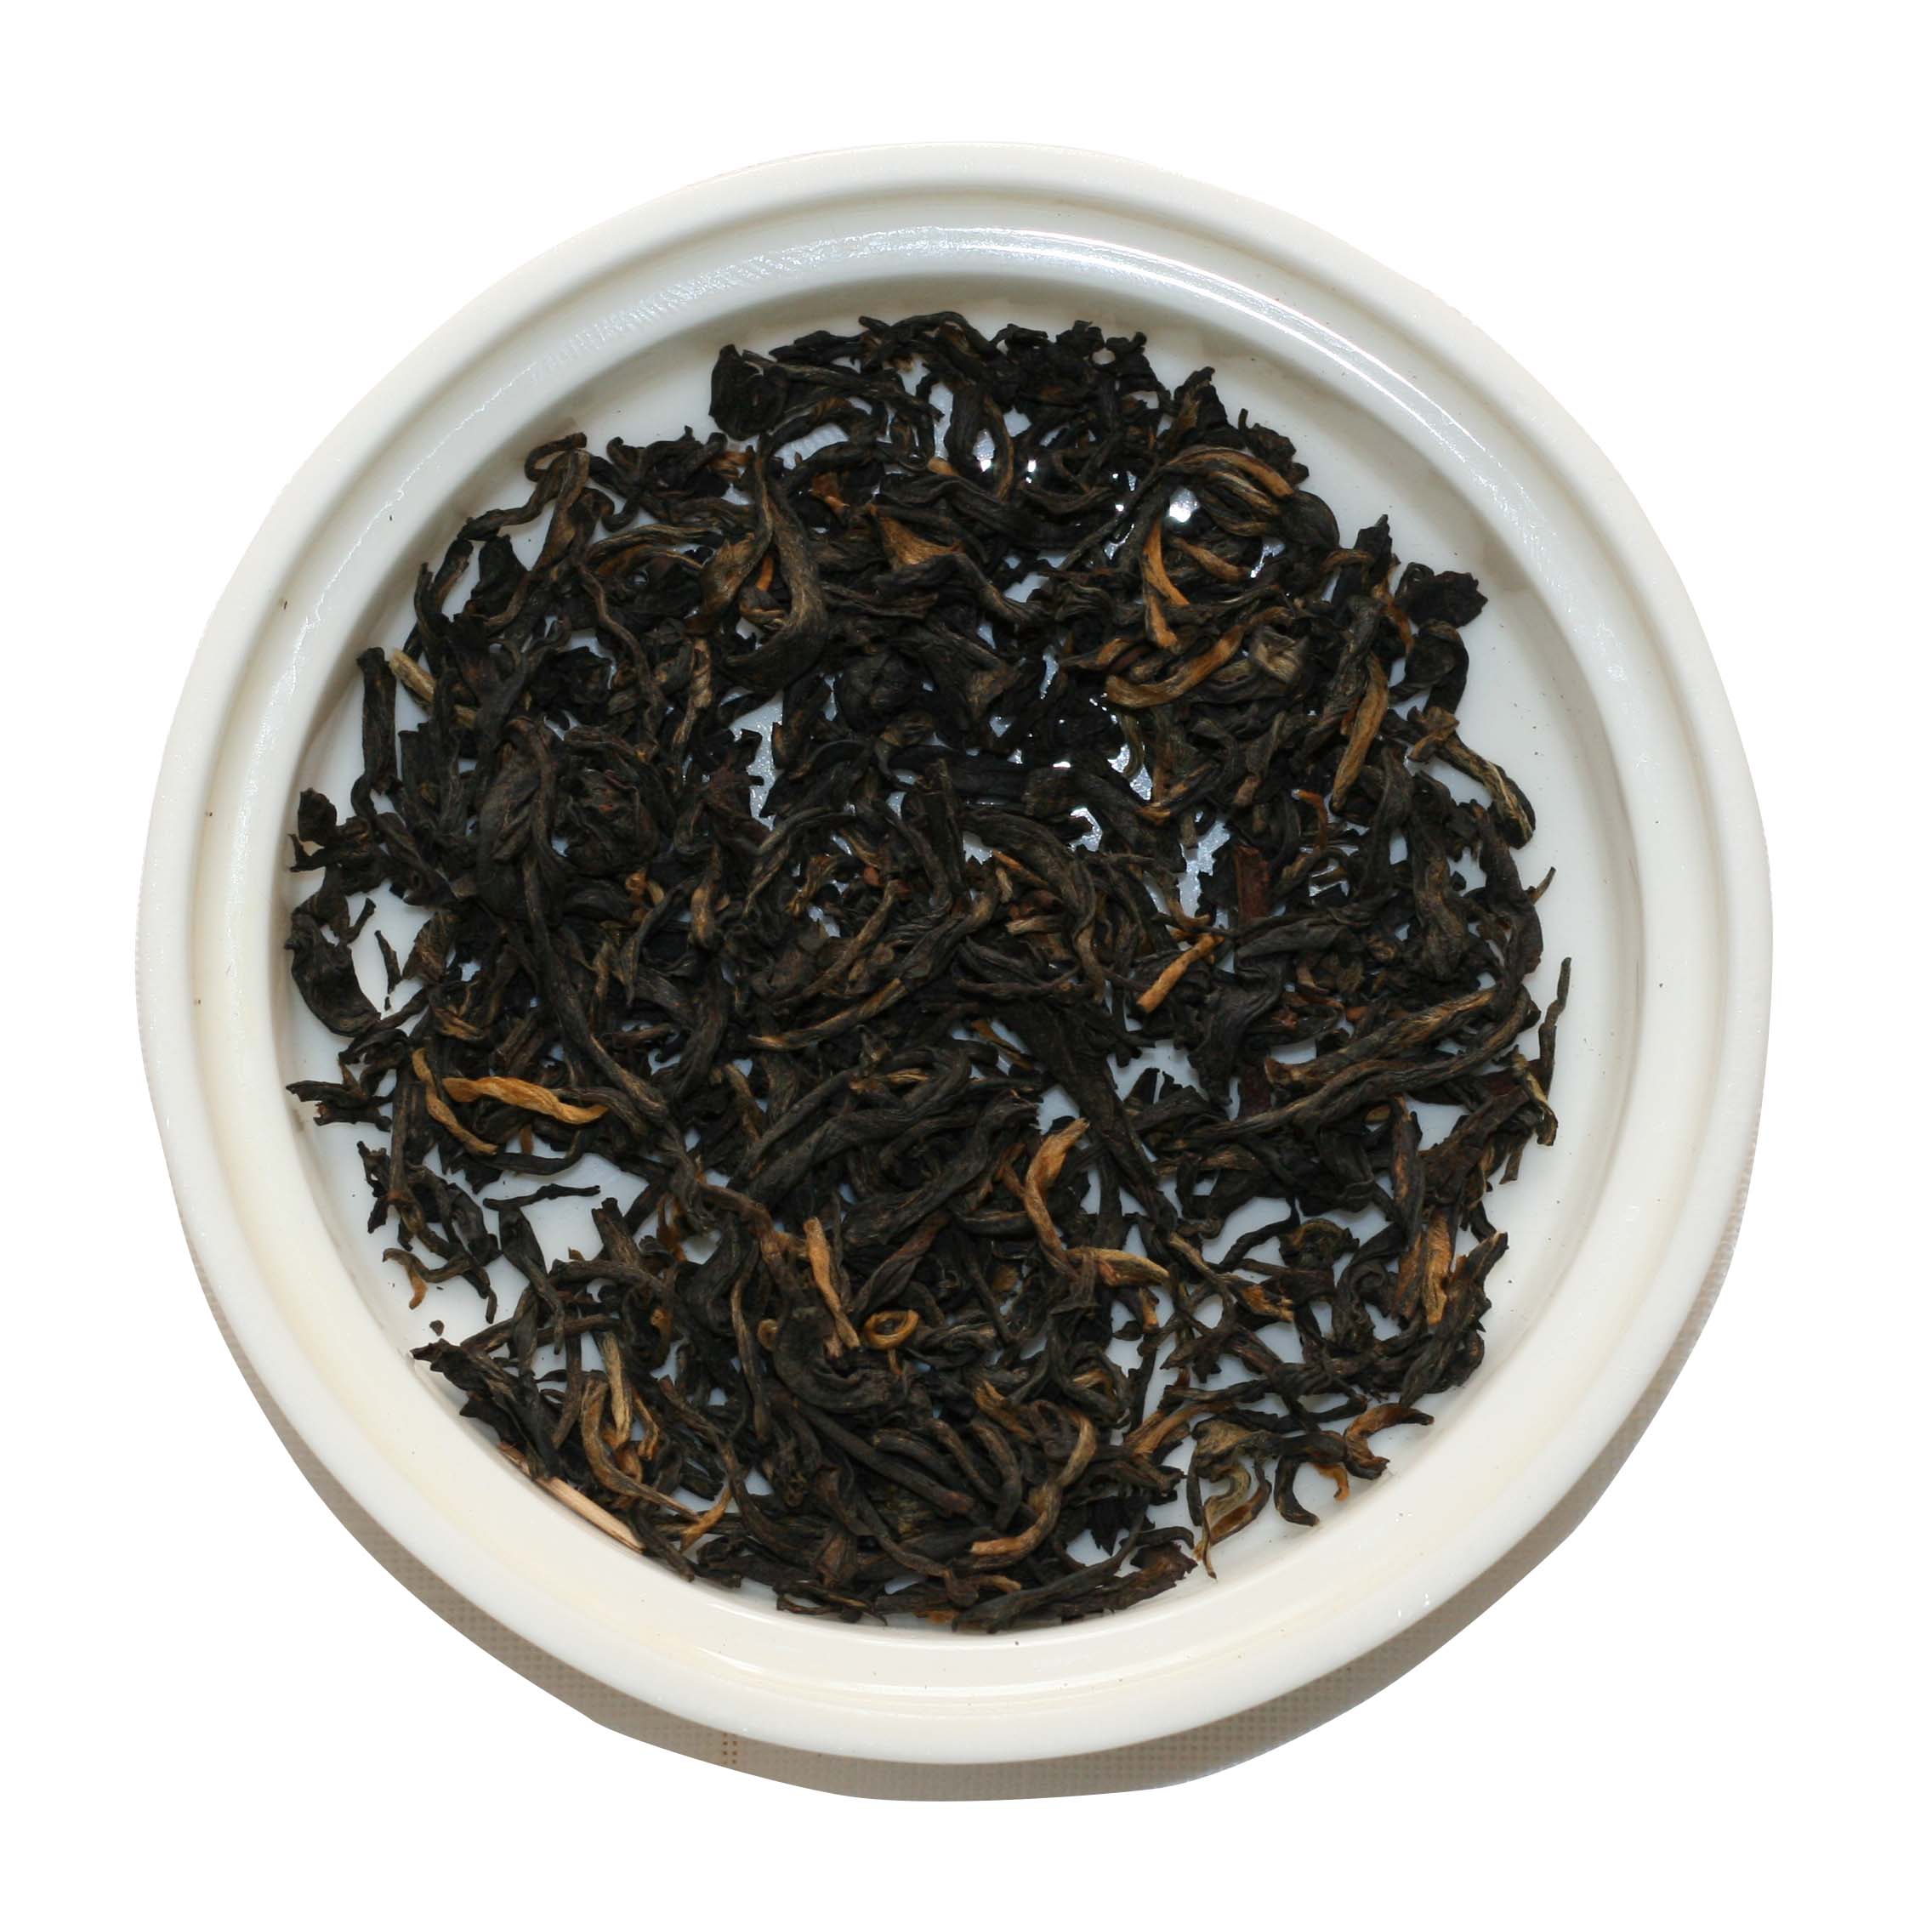 Дянь Хун "В" (40-50% чайных почек )